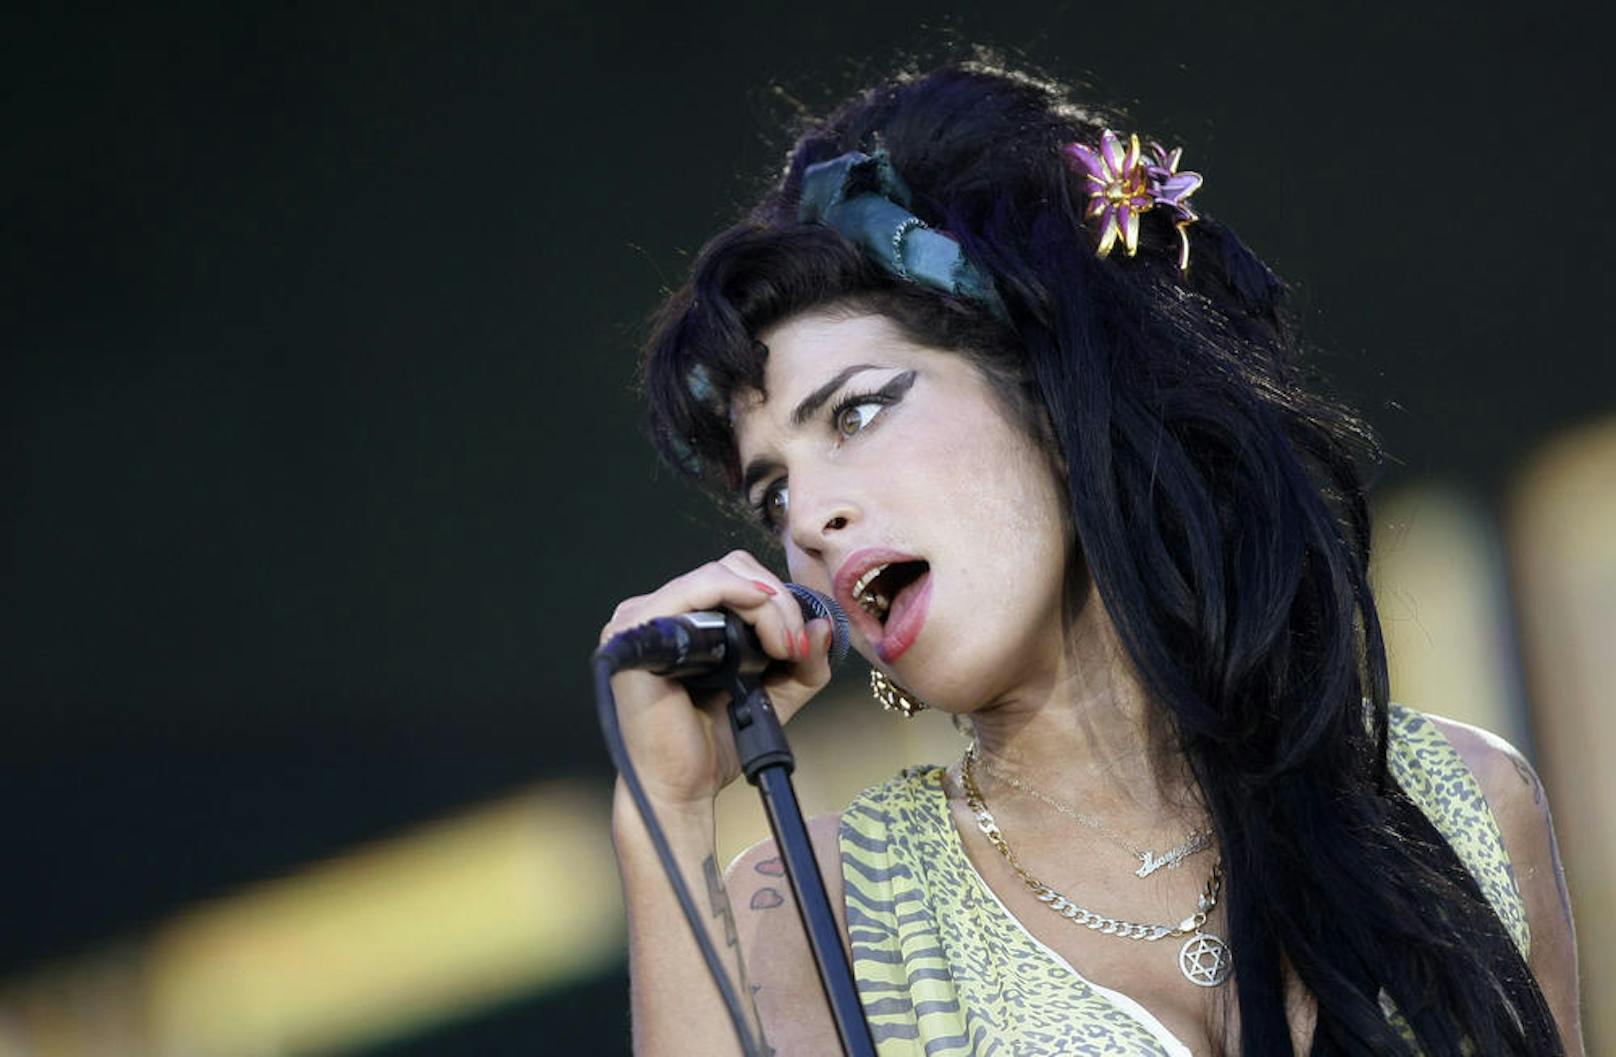 Geboren am 14. September 1983 in London, begann Winehouse schon früh, ihre musikalischen Fähigkeiten zu entwickeln.